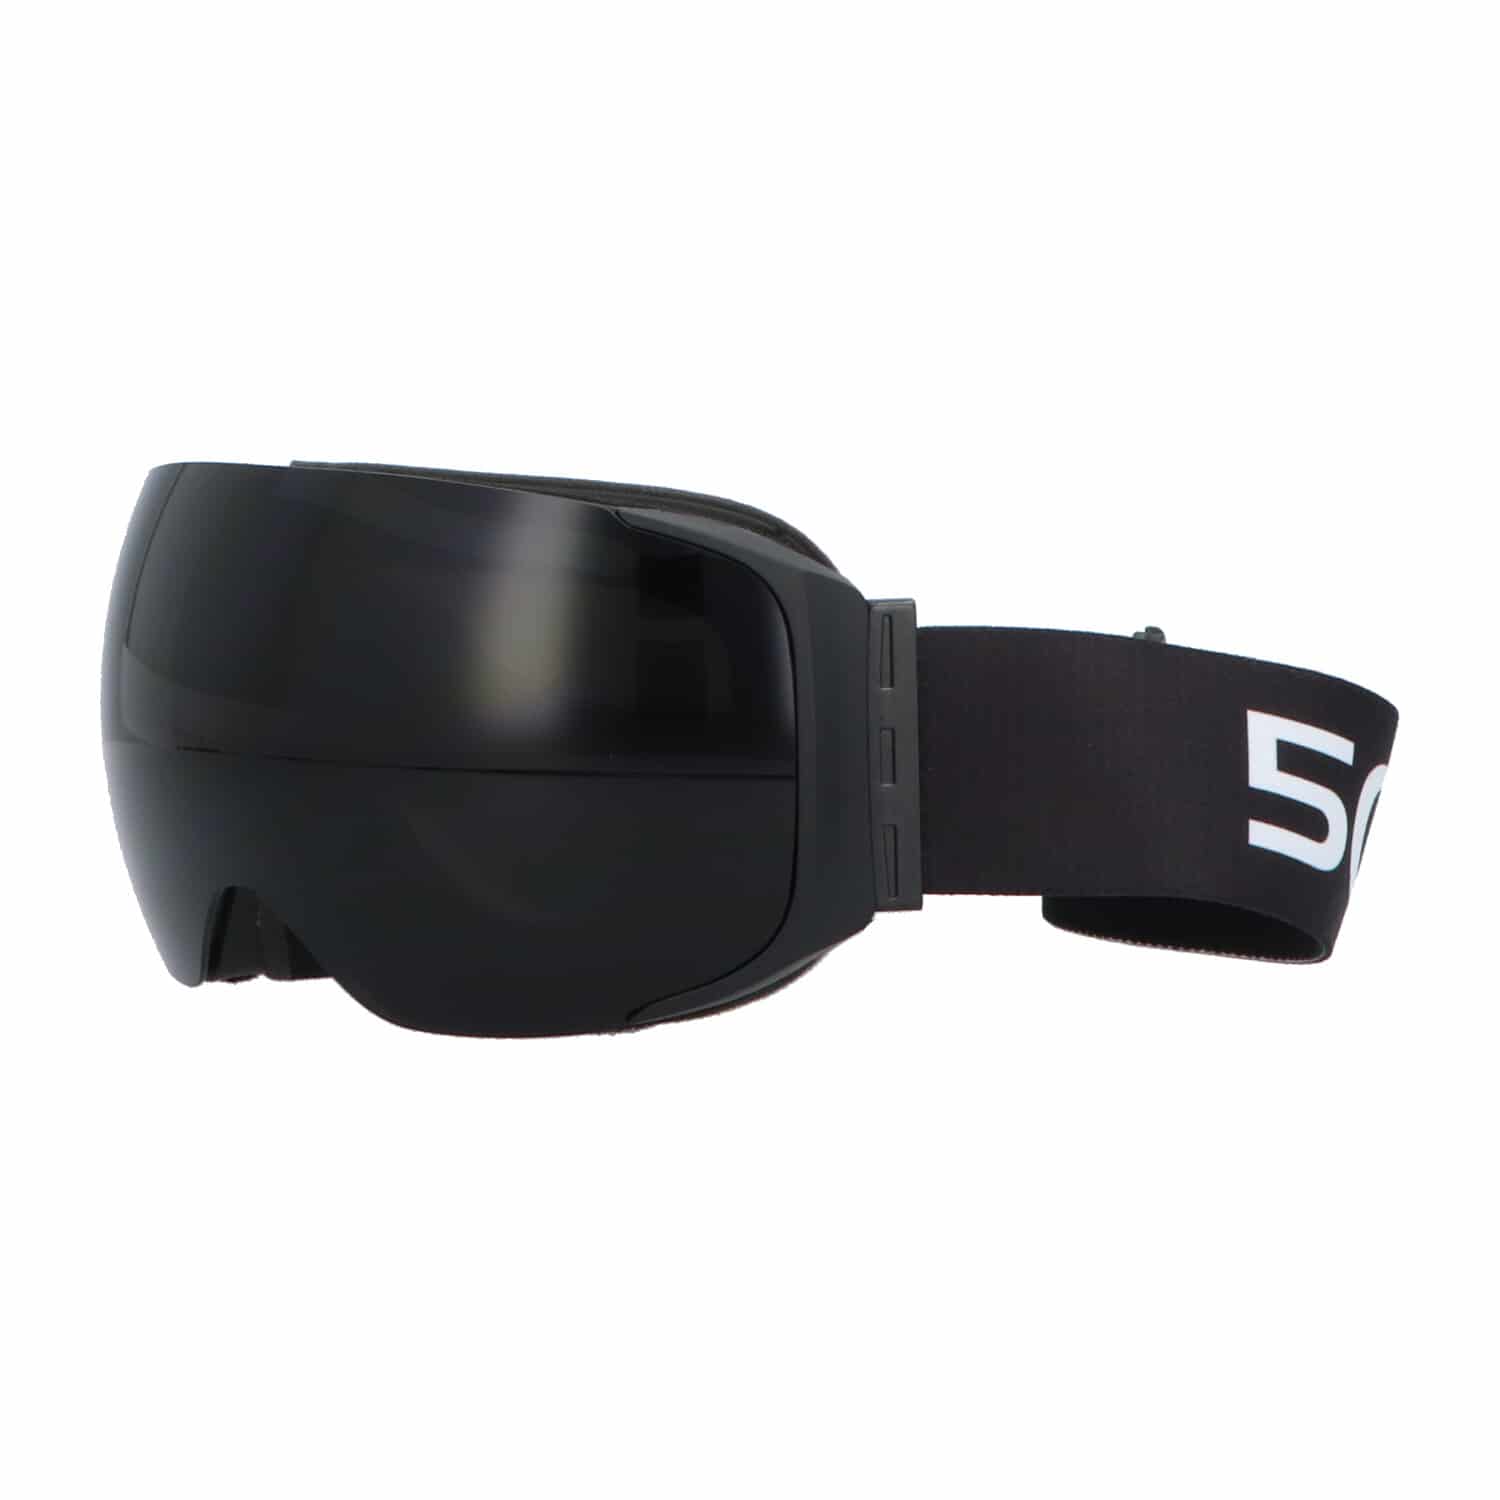 5one® Alpine 9 - Skibril met 2 Verwisselbare Lenzen - Zwart en Oranje